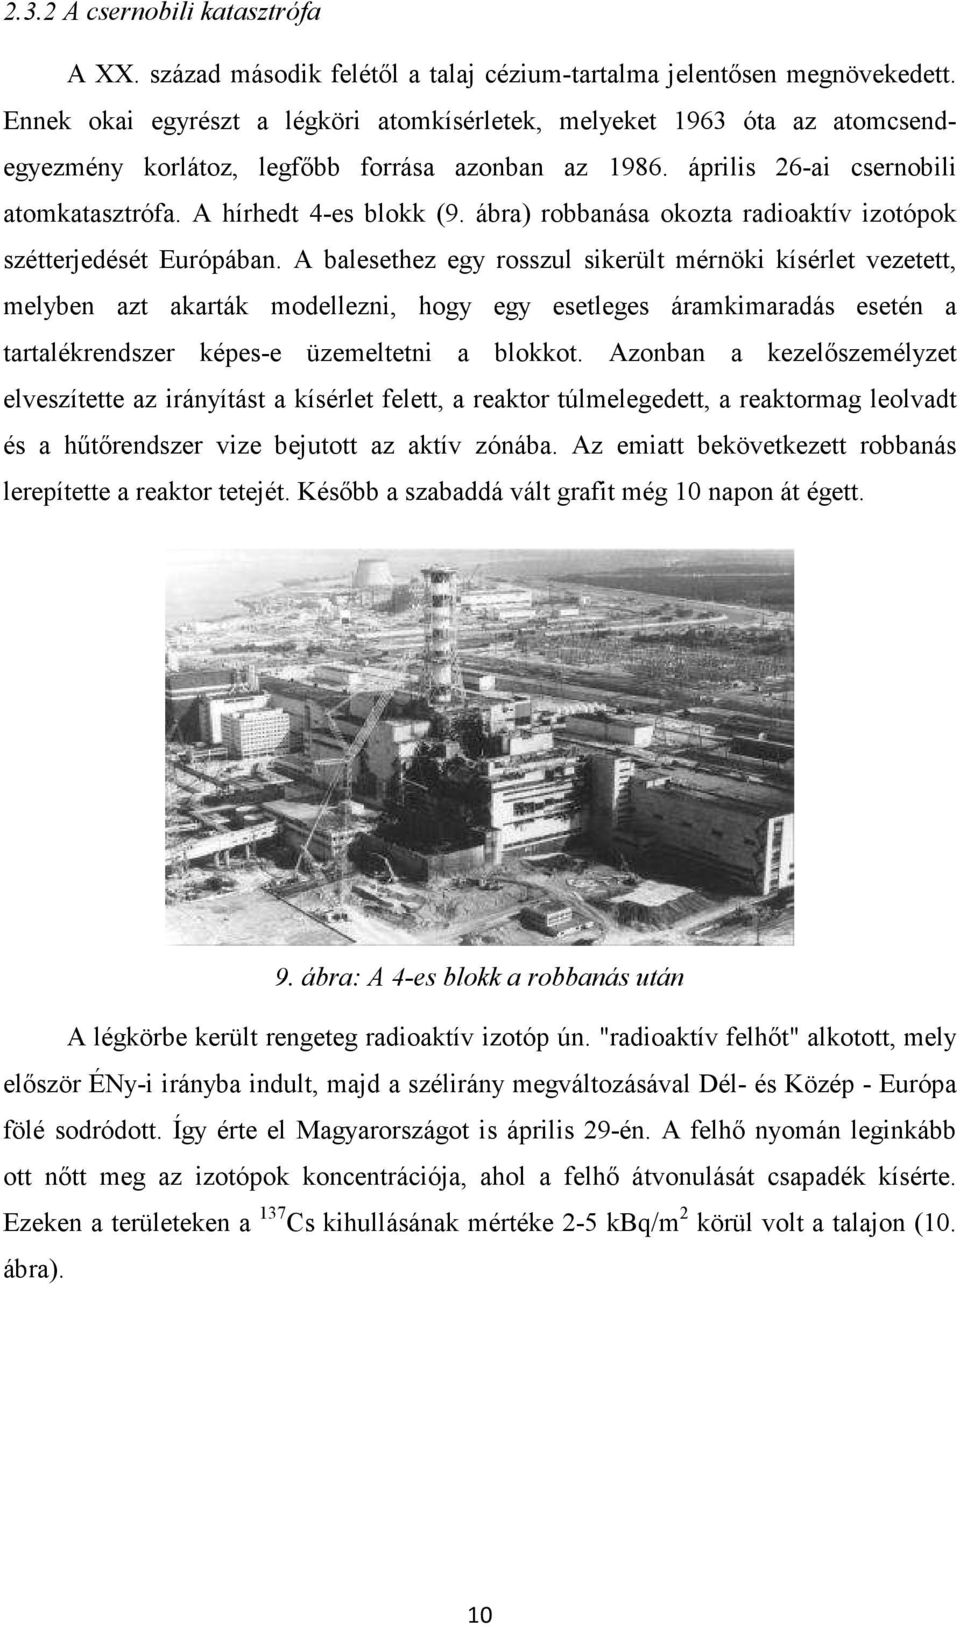 ábra) robbanása okozta radioaktív izotópok szétterjedését Európában.